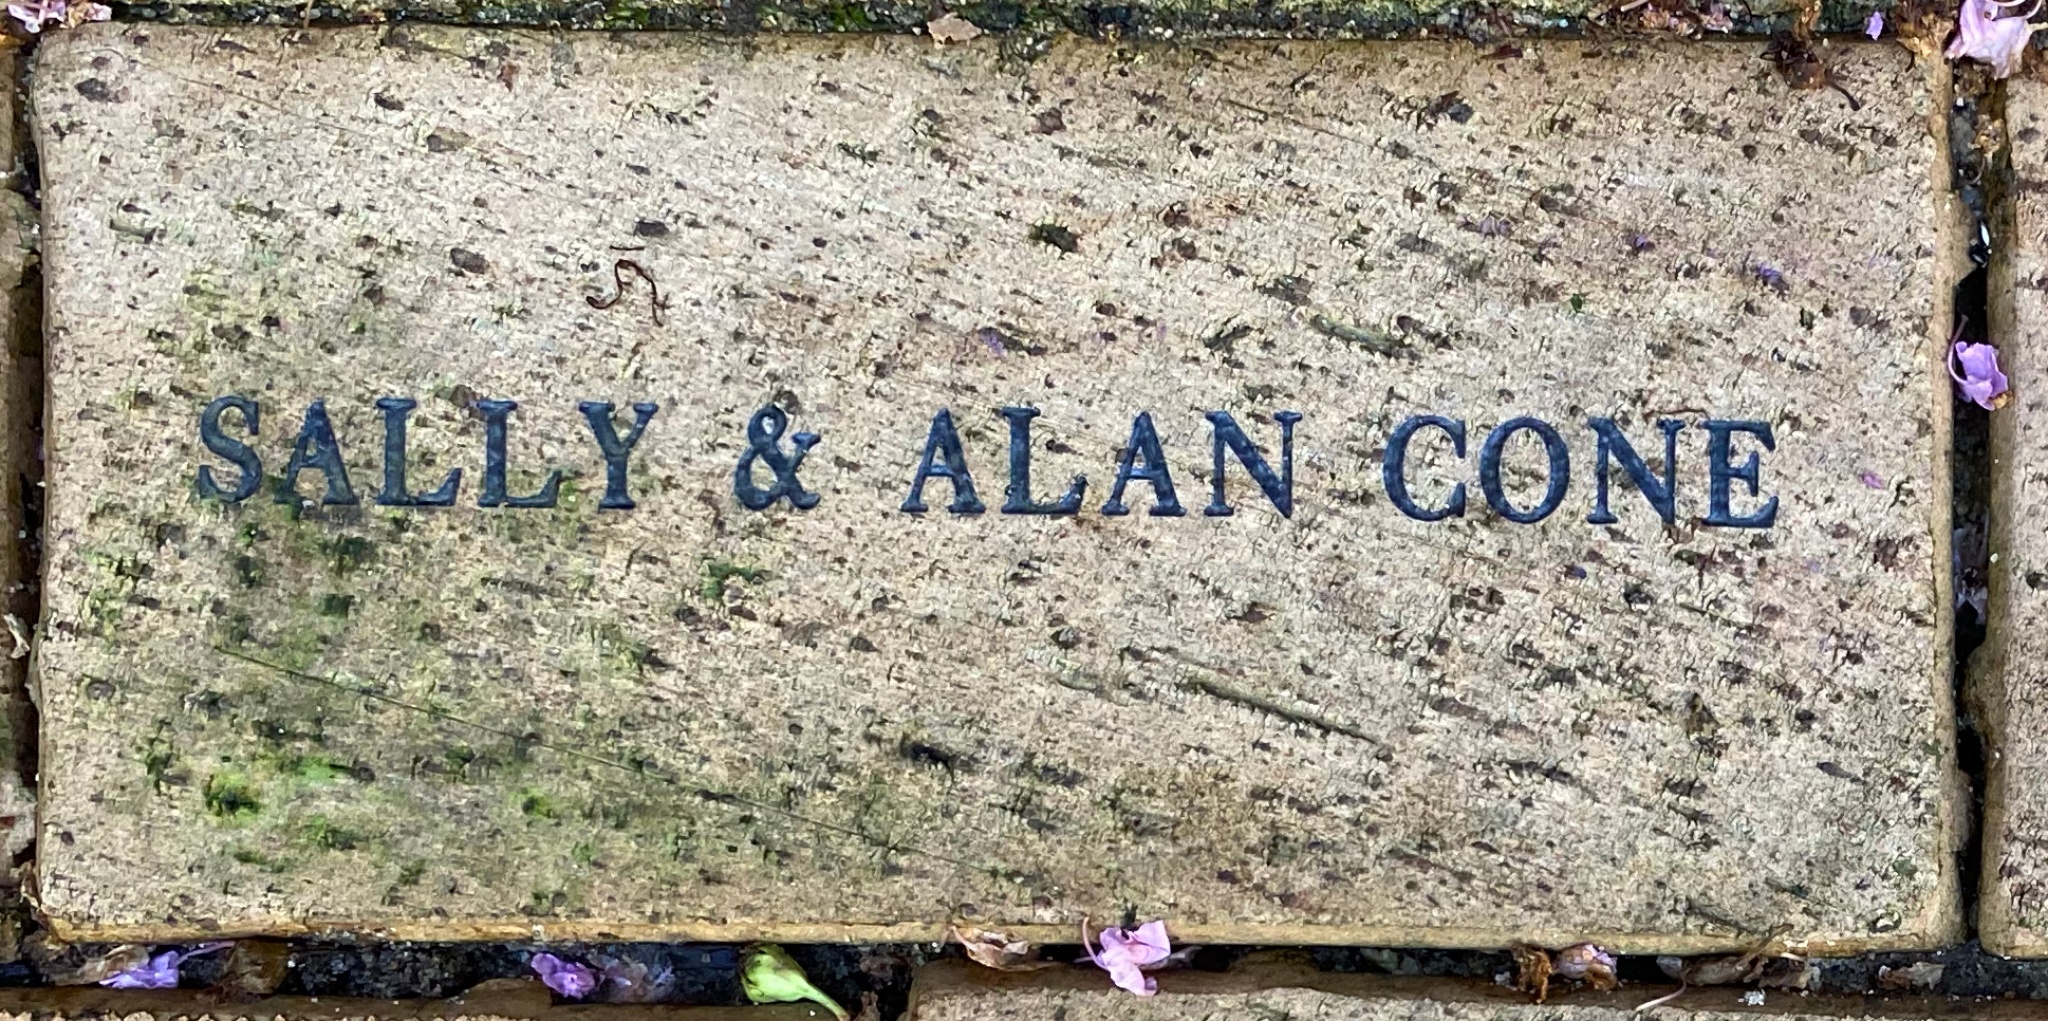 SALLY & ALAN CONE